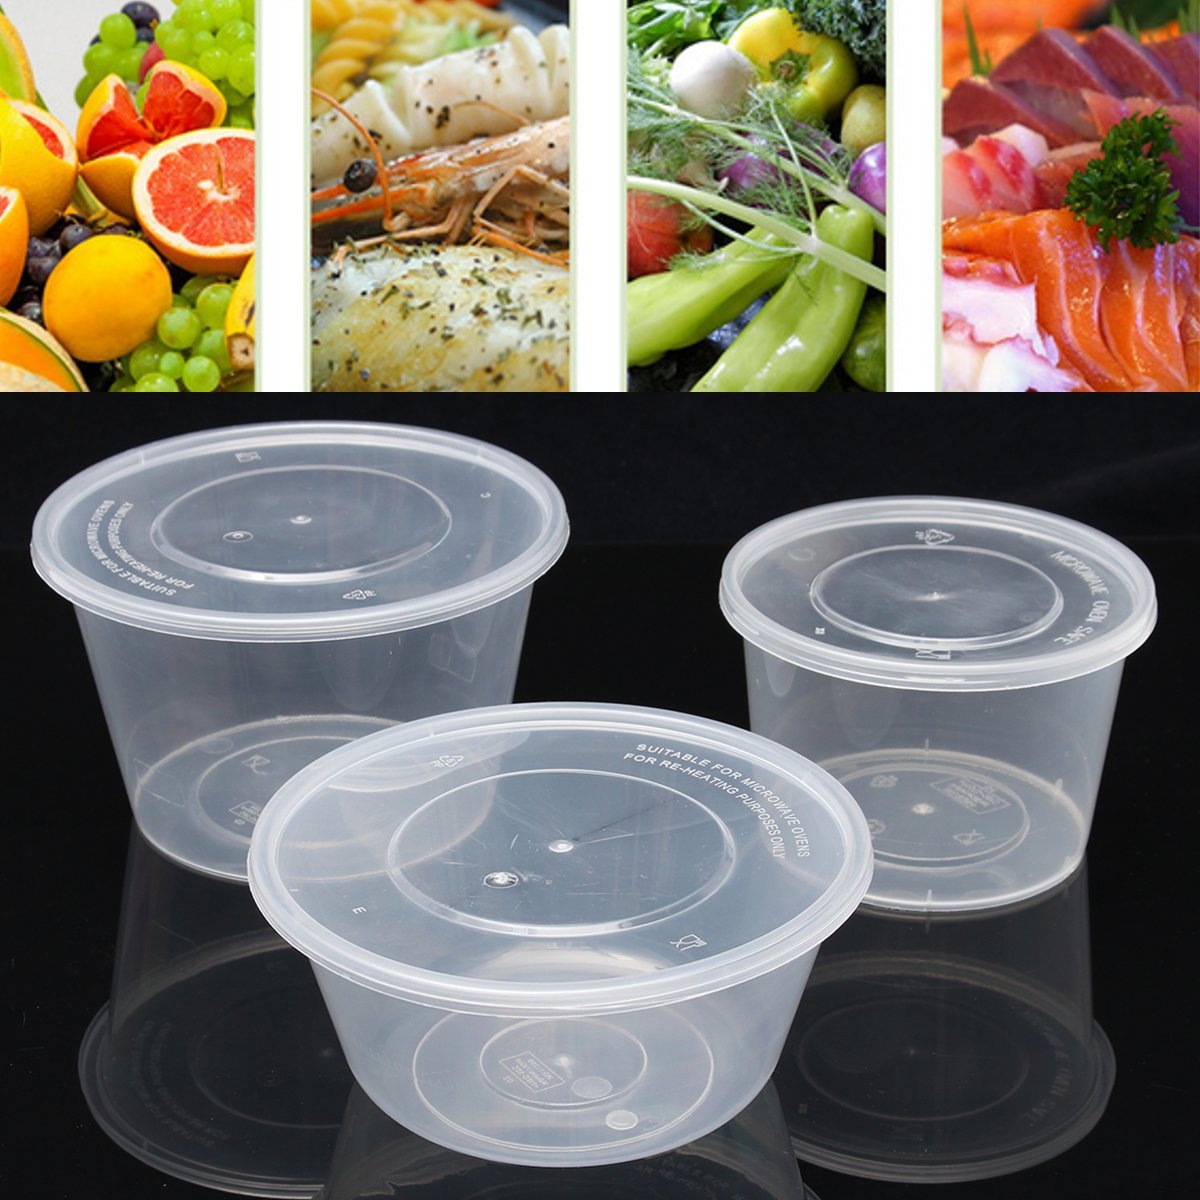 Купить одноразовую посуду пластиковую. Контейнер для супа одноразовый. Пластиковая посуда прозрачная. Пластиковые контейнеры для пищевых продуктов. Пластиковые контейнеры для пищевых продуктов одноразовые.